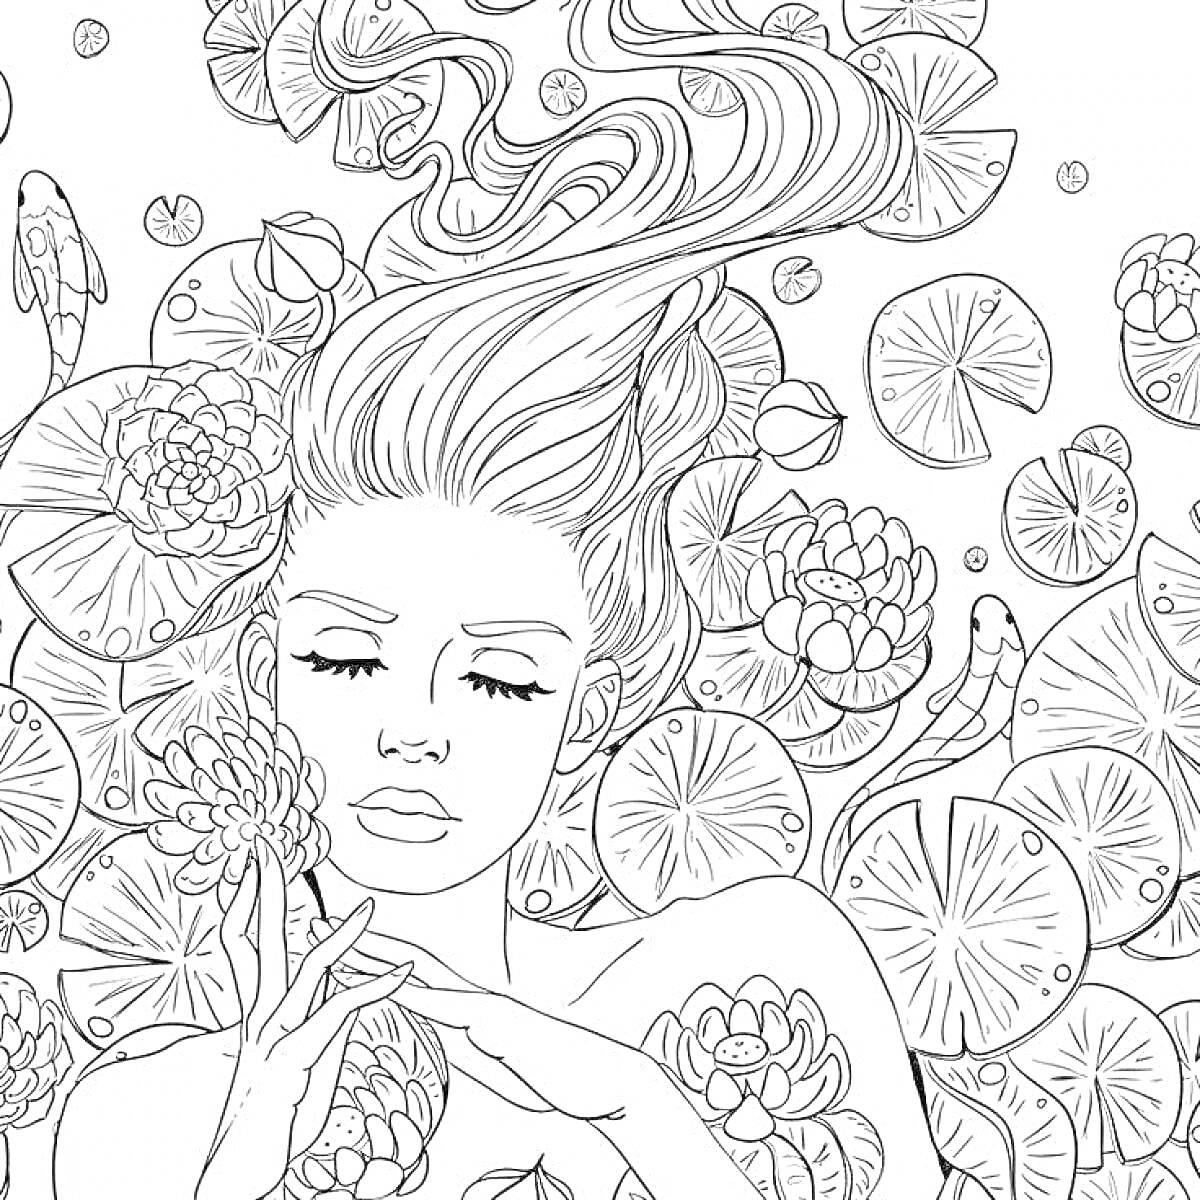 На раскраске изображено: Антистресс, Женщина, Волосы, Водяные лилии, Цветы, Природа, Спокойствие, Релаксация